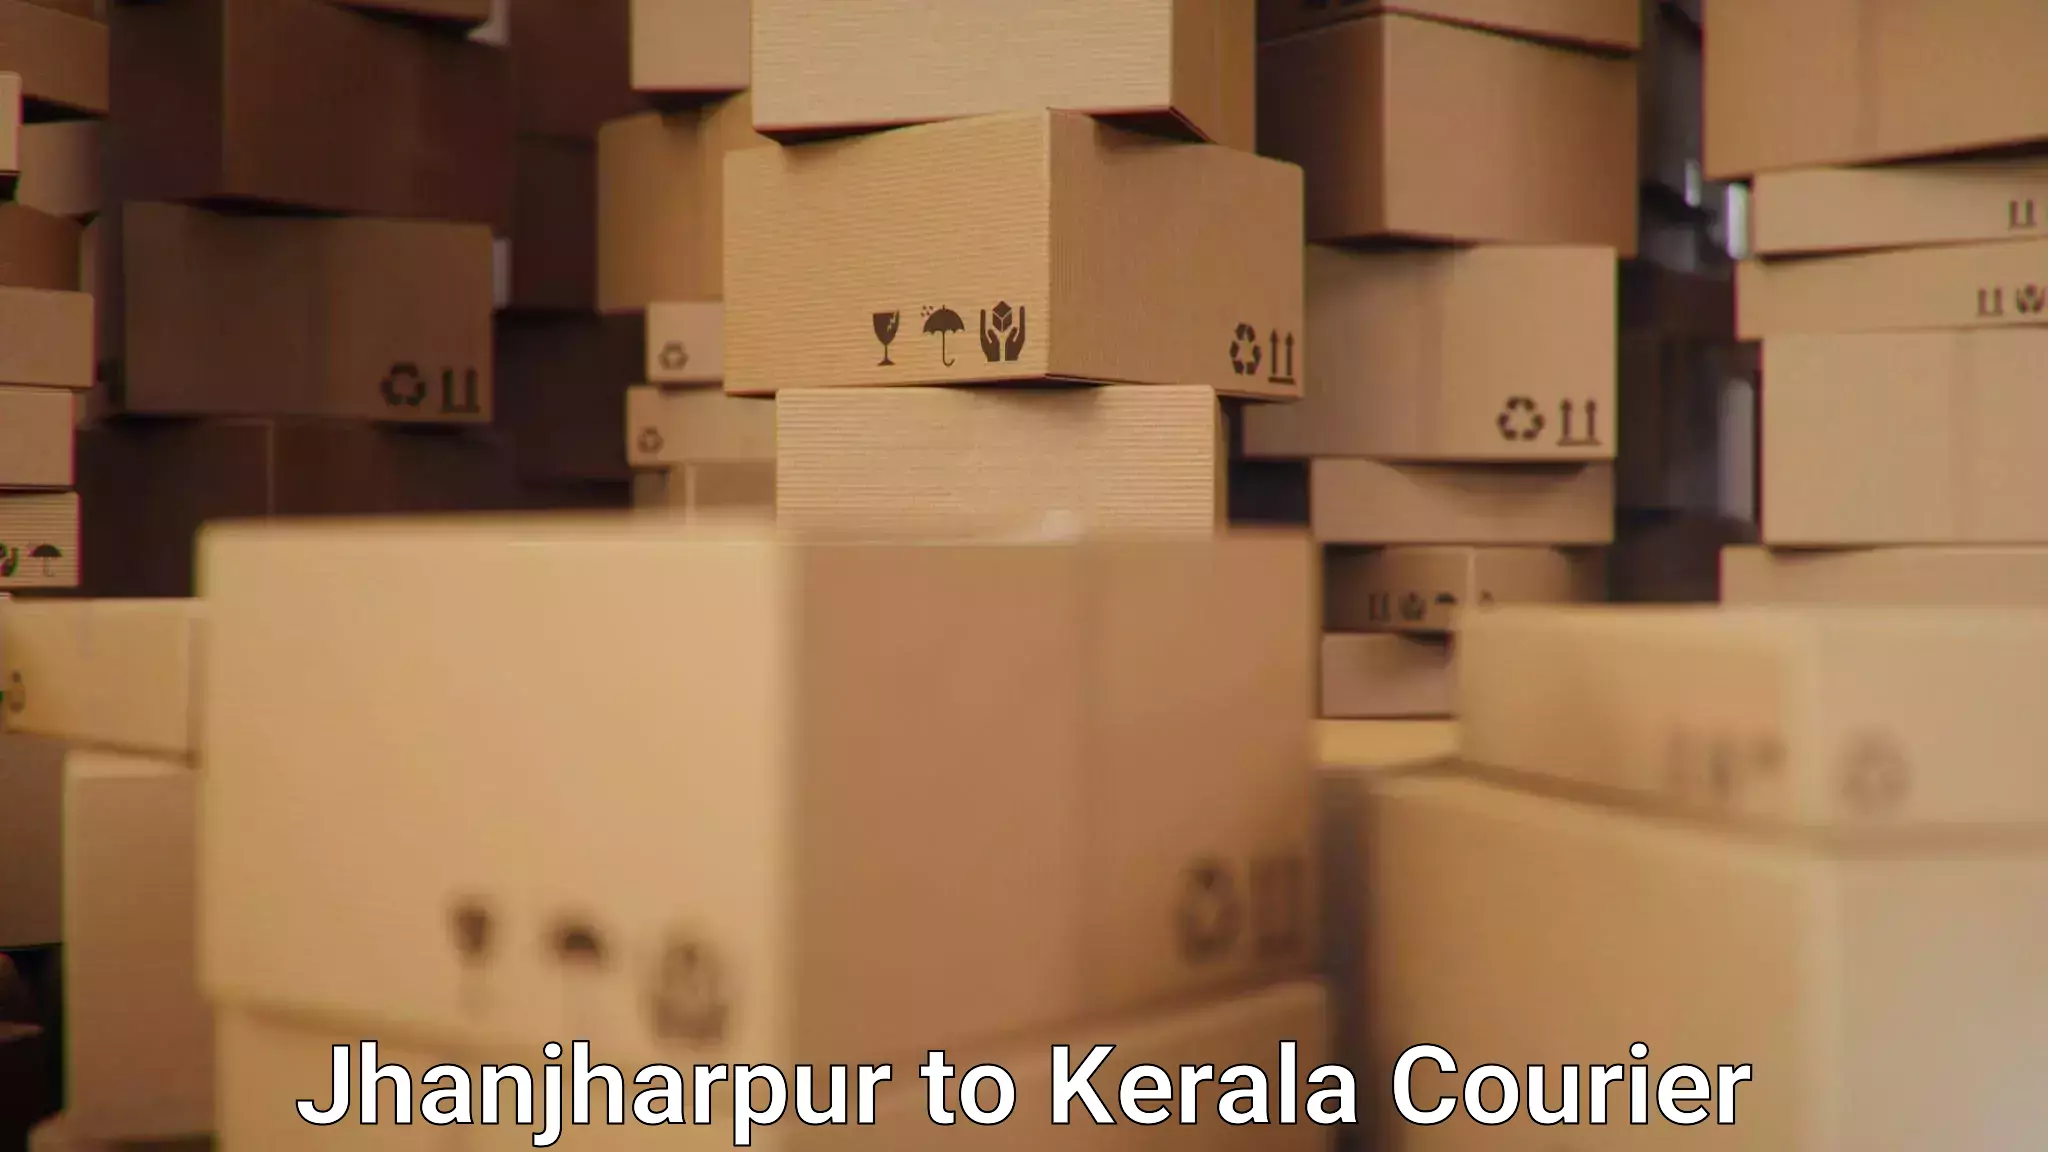 High-capacity shipping options Jhanjharpur to Thiruvananthapuram